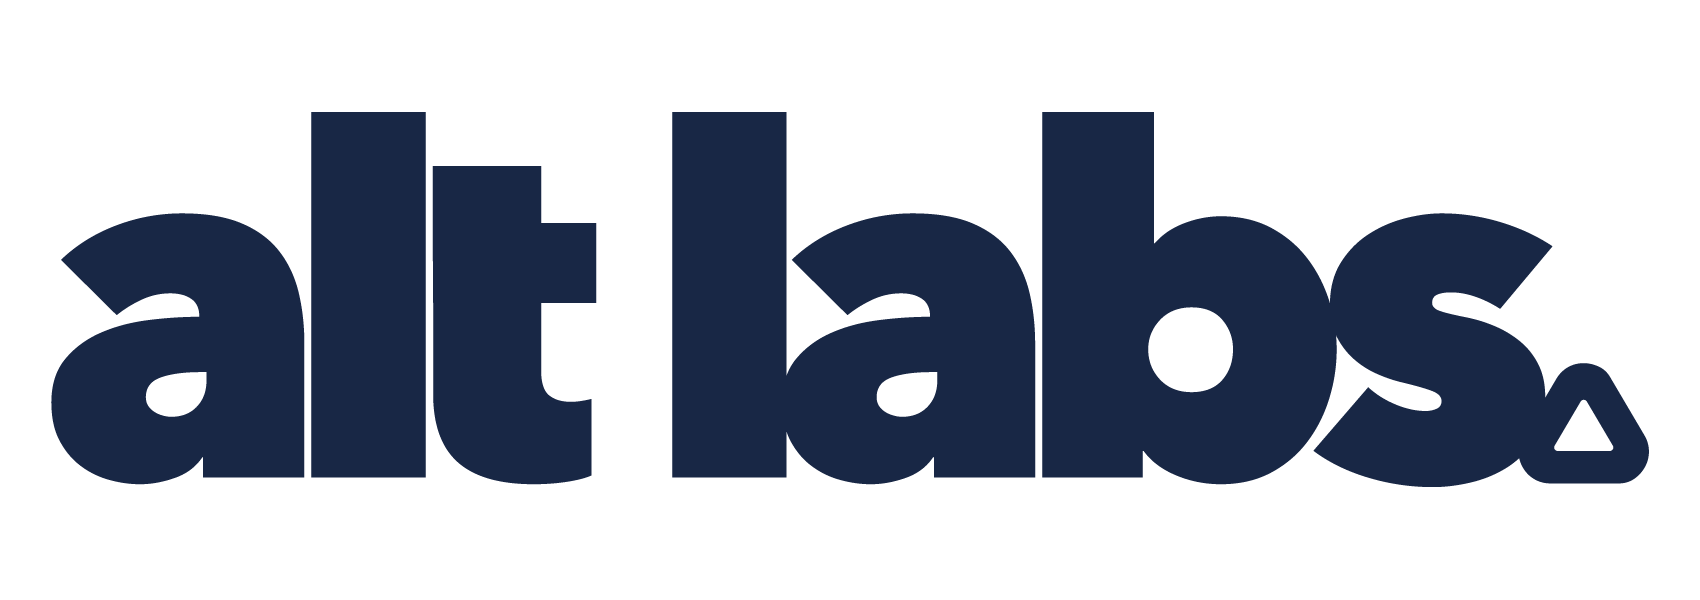 altlabs logo